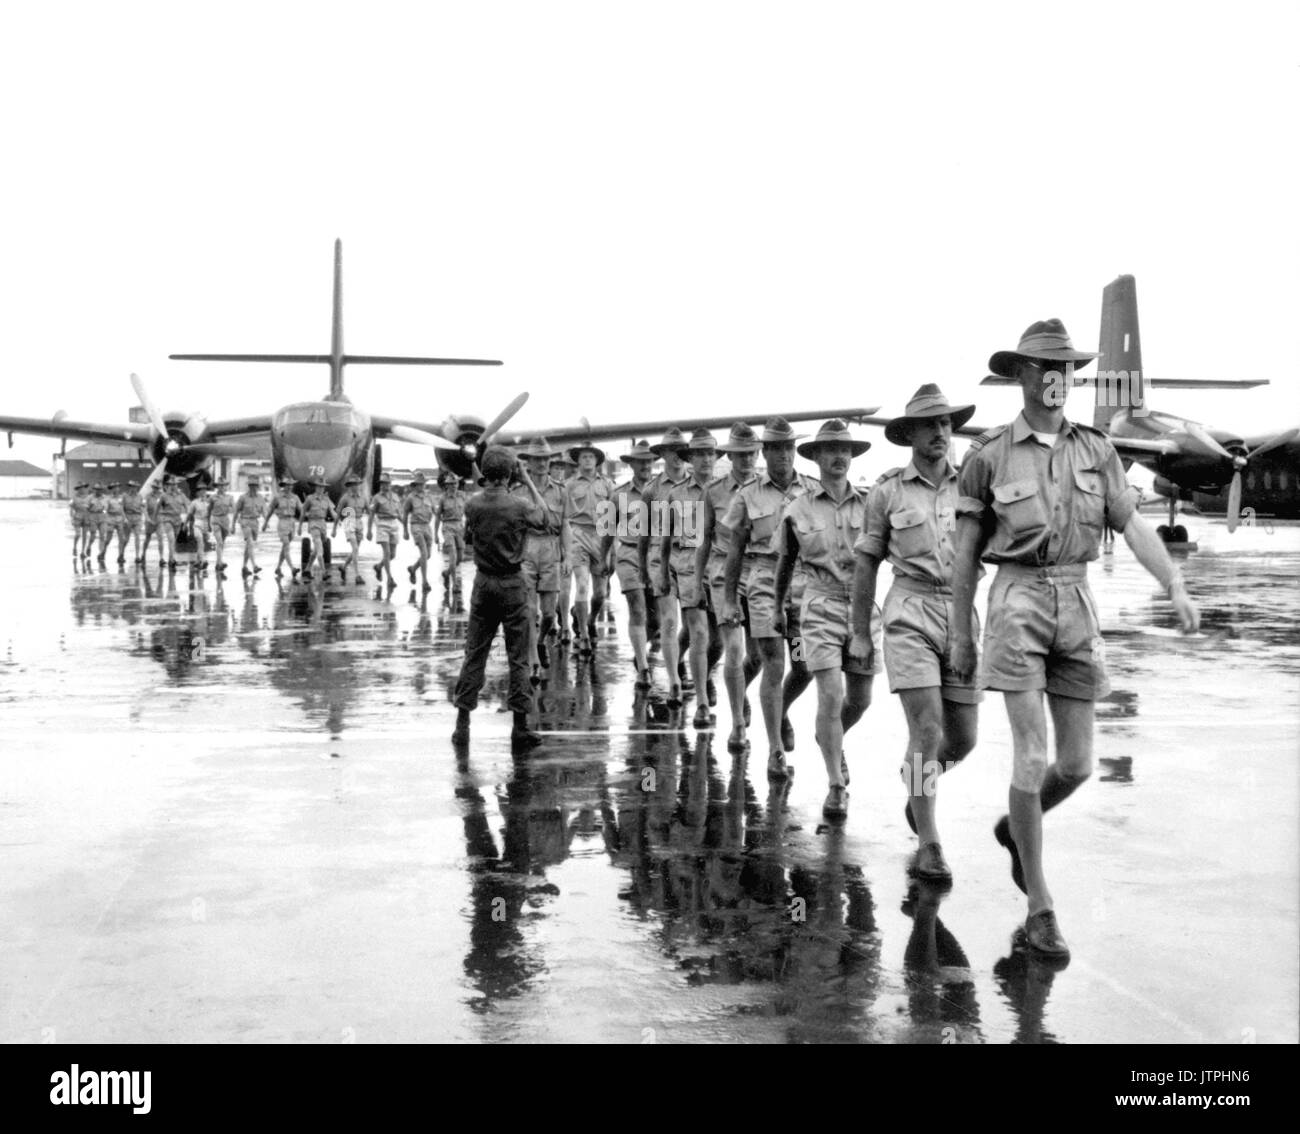 Ein Kontingent von der Royal Australian Air Force kommt am Flughafen Tan Son Nhut, Saigon, mit der vietnamesischen und der US-Streitkräfte in den Transport von Soldaten und Material in South Vietnam zu bekämpfen. August 10, 1964. Armee NARA DATEI #: 306-PSC -64-5382 Krieg & KONFLIKT BUCH Nr.: 393 Stockfoto